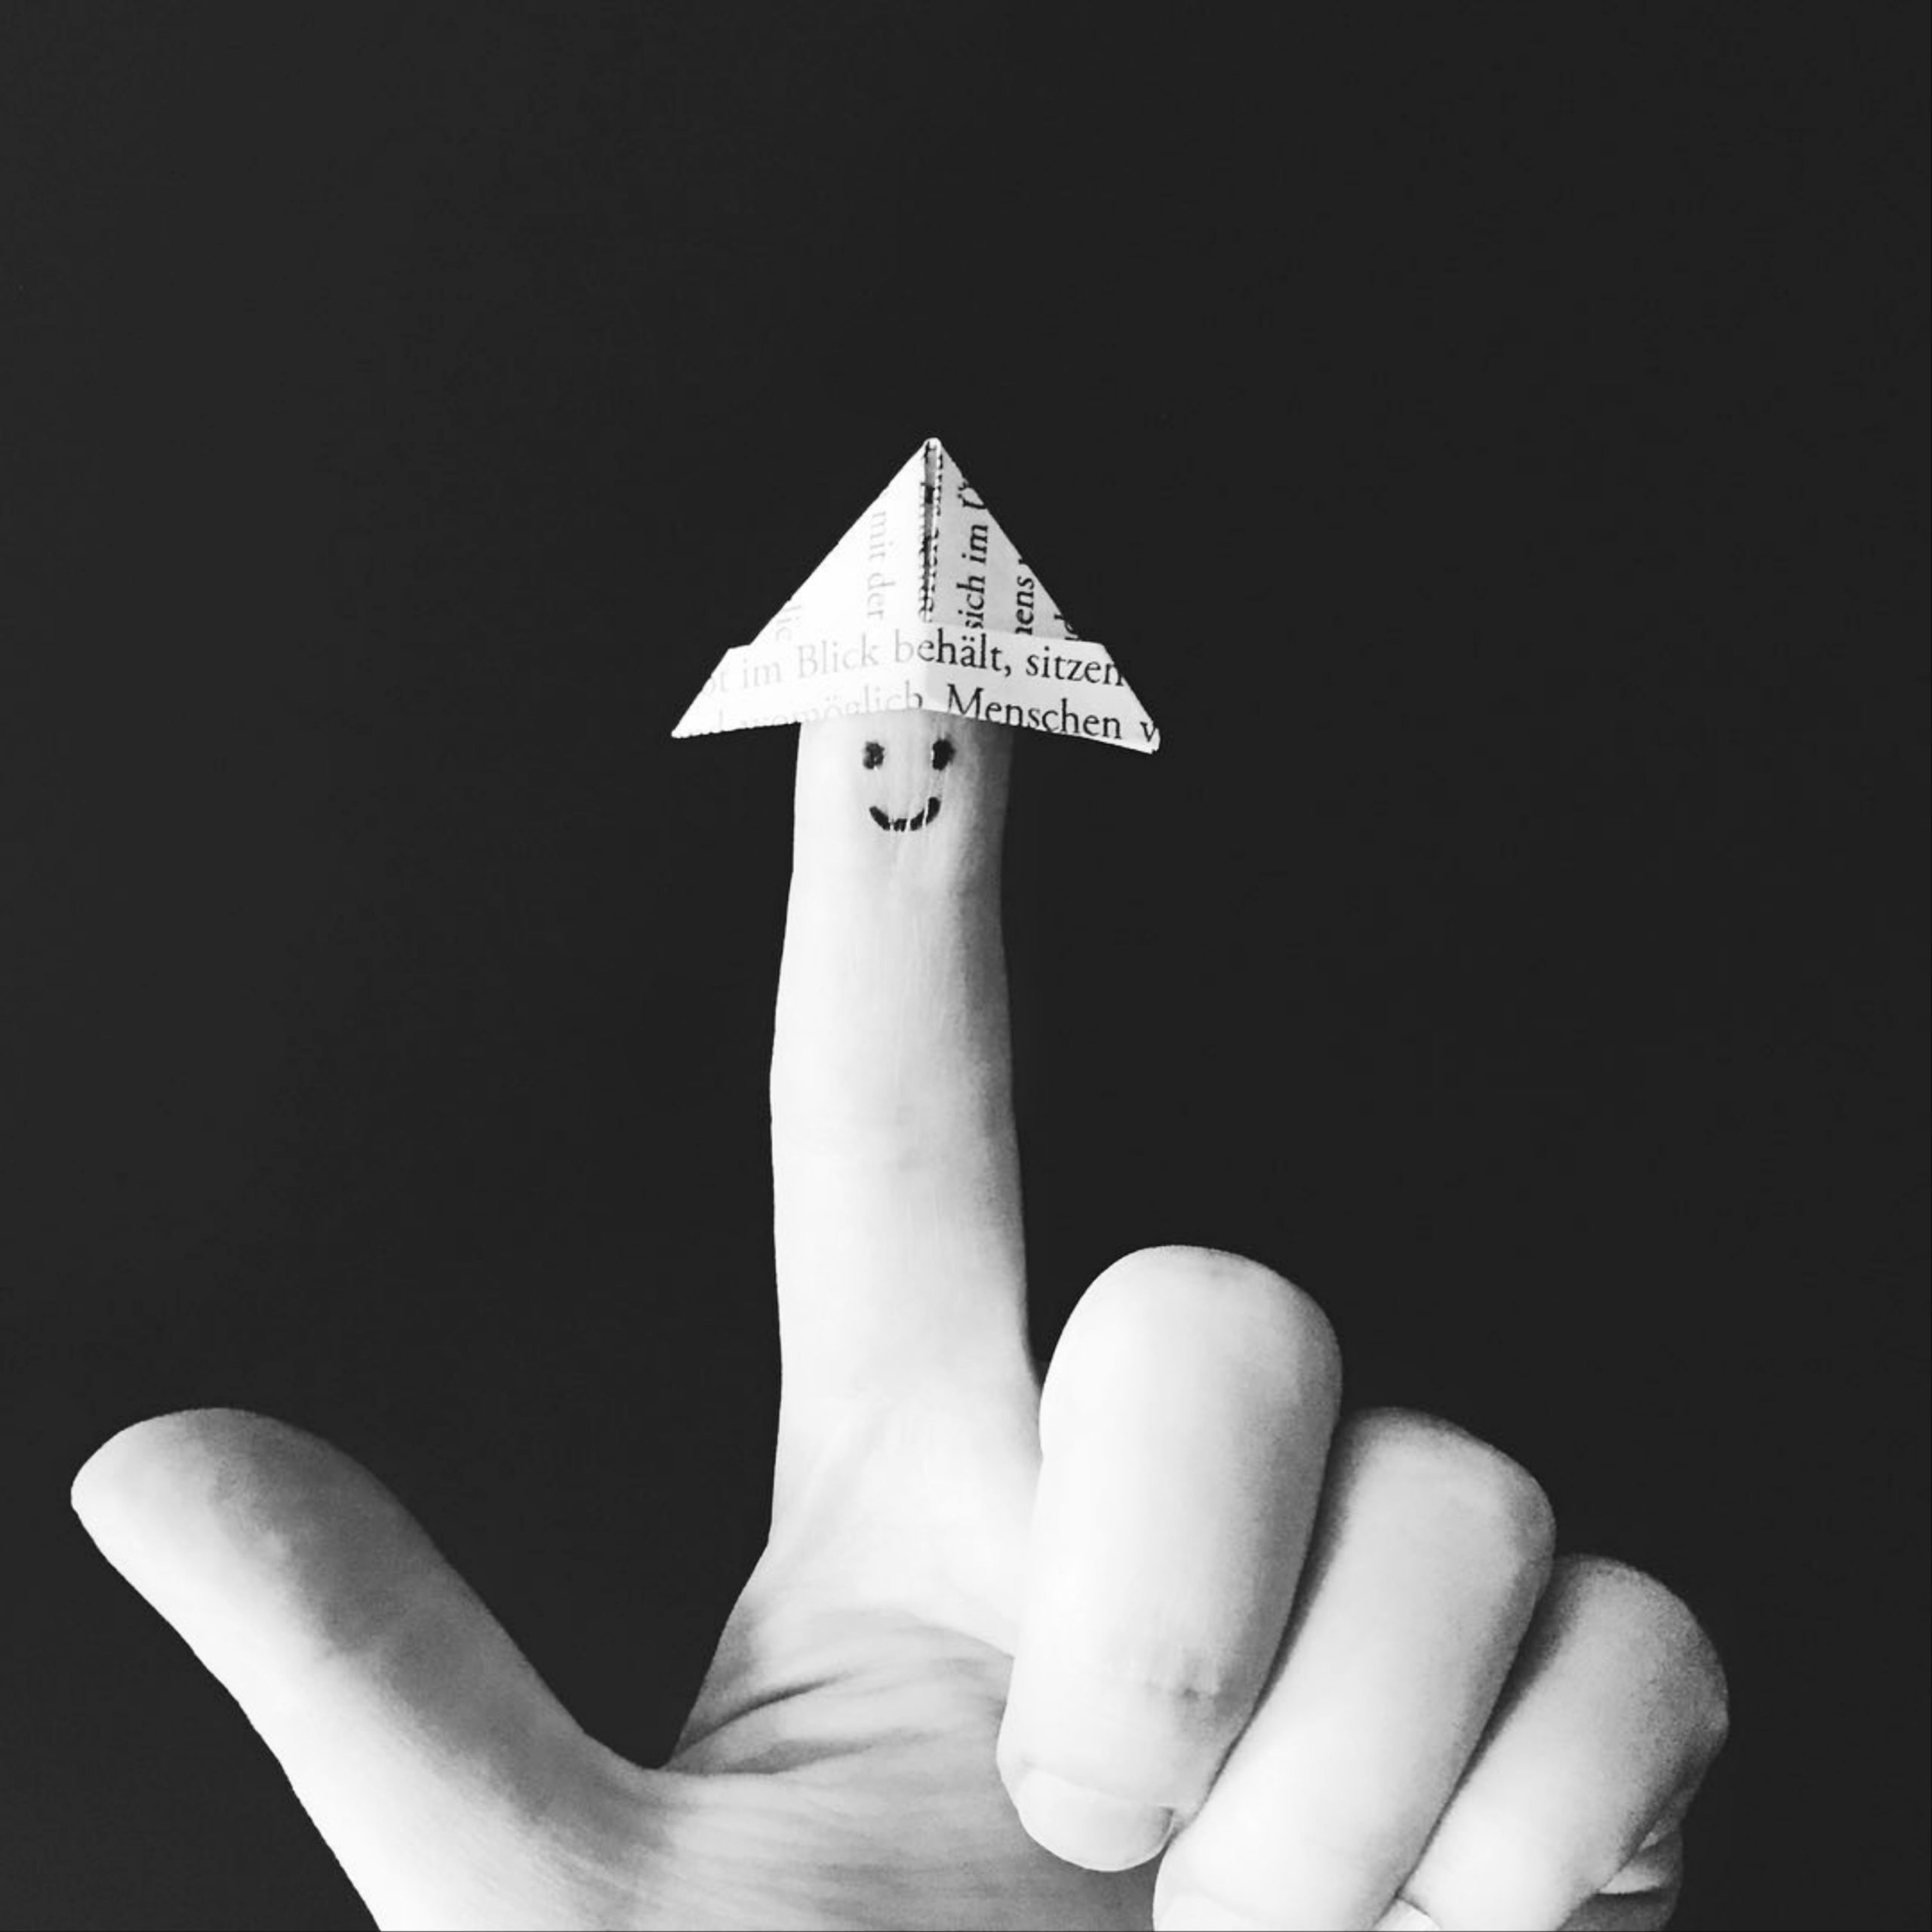 Paper on finger tip